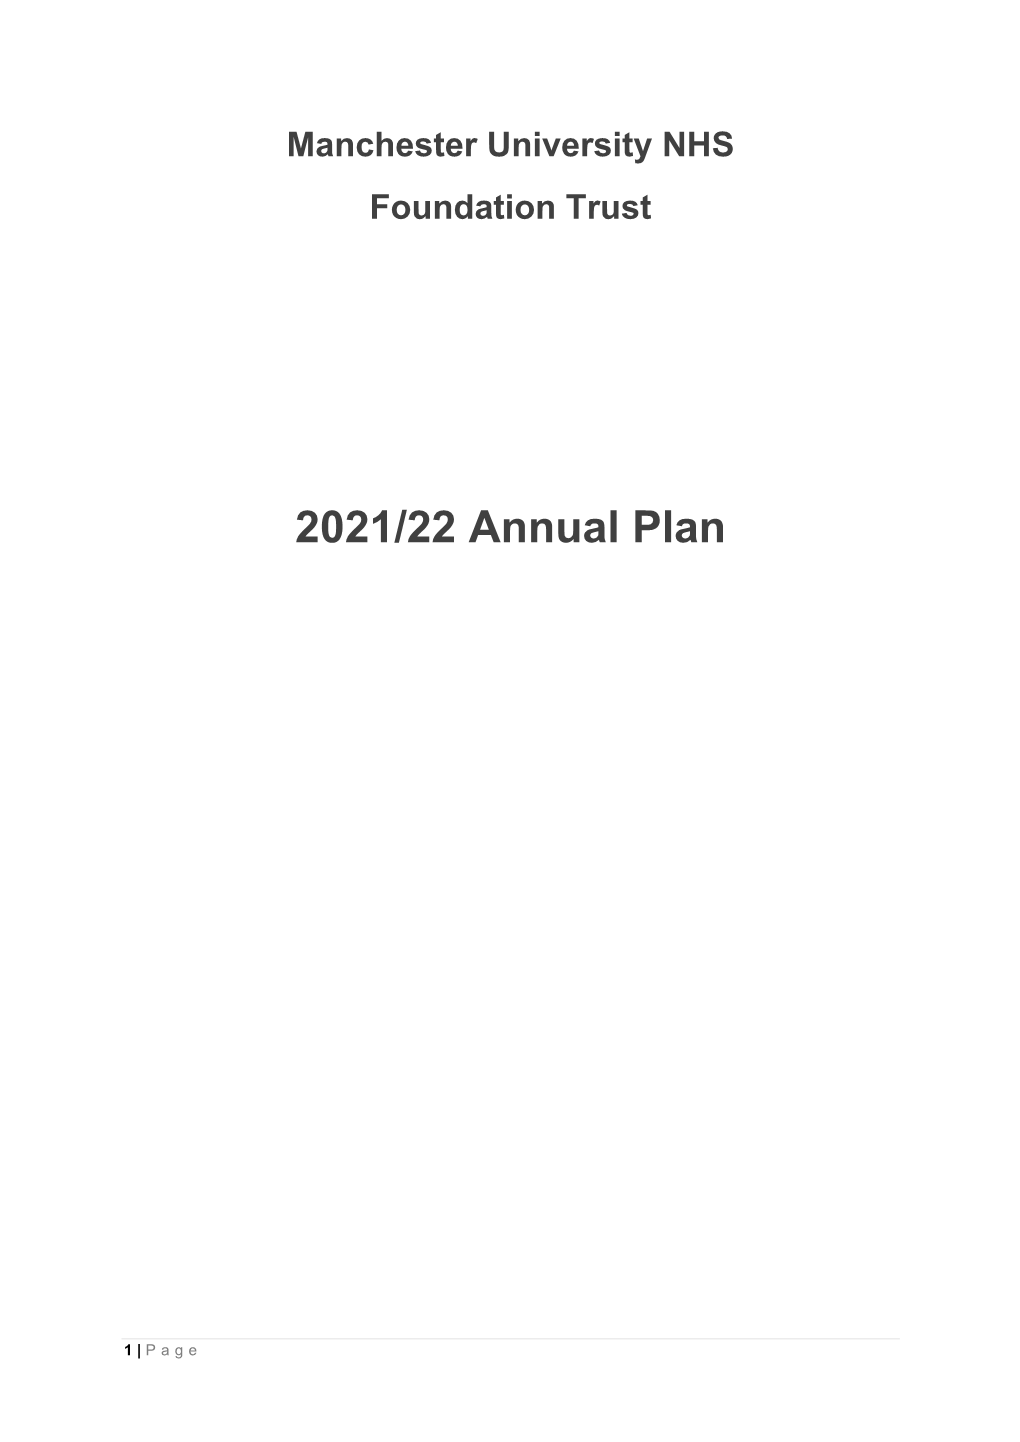 2021/22 Annual Plan